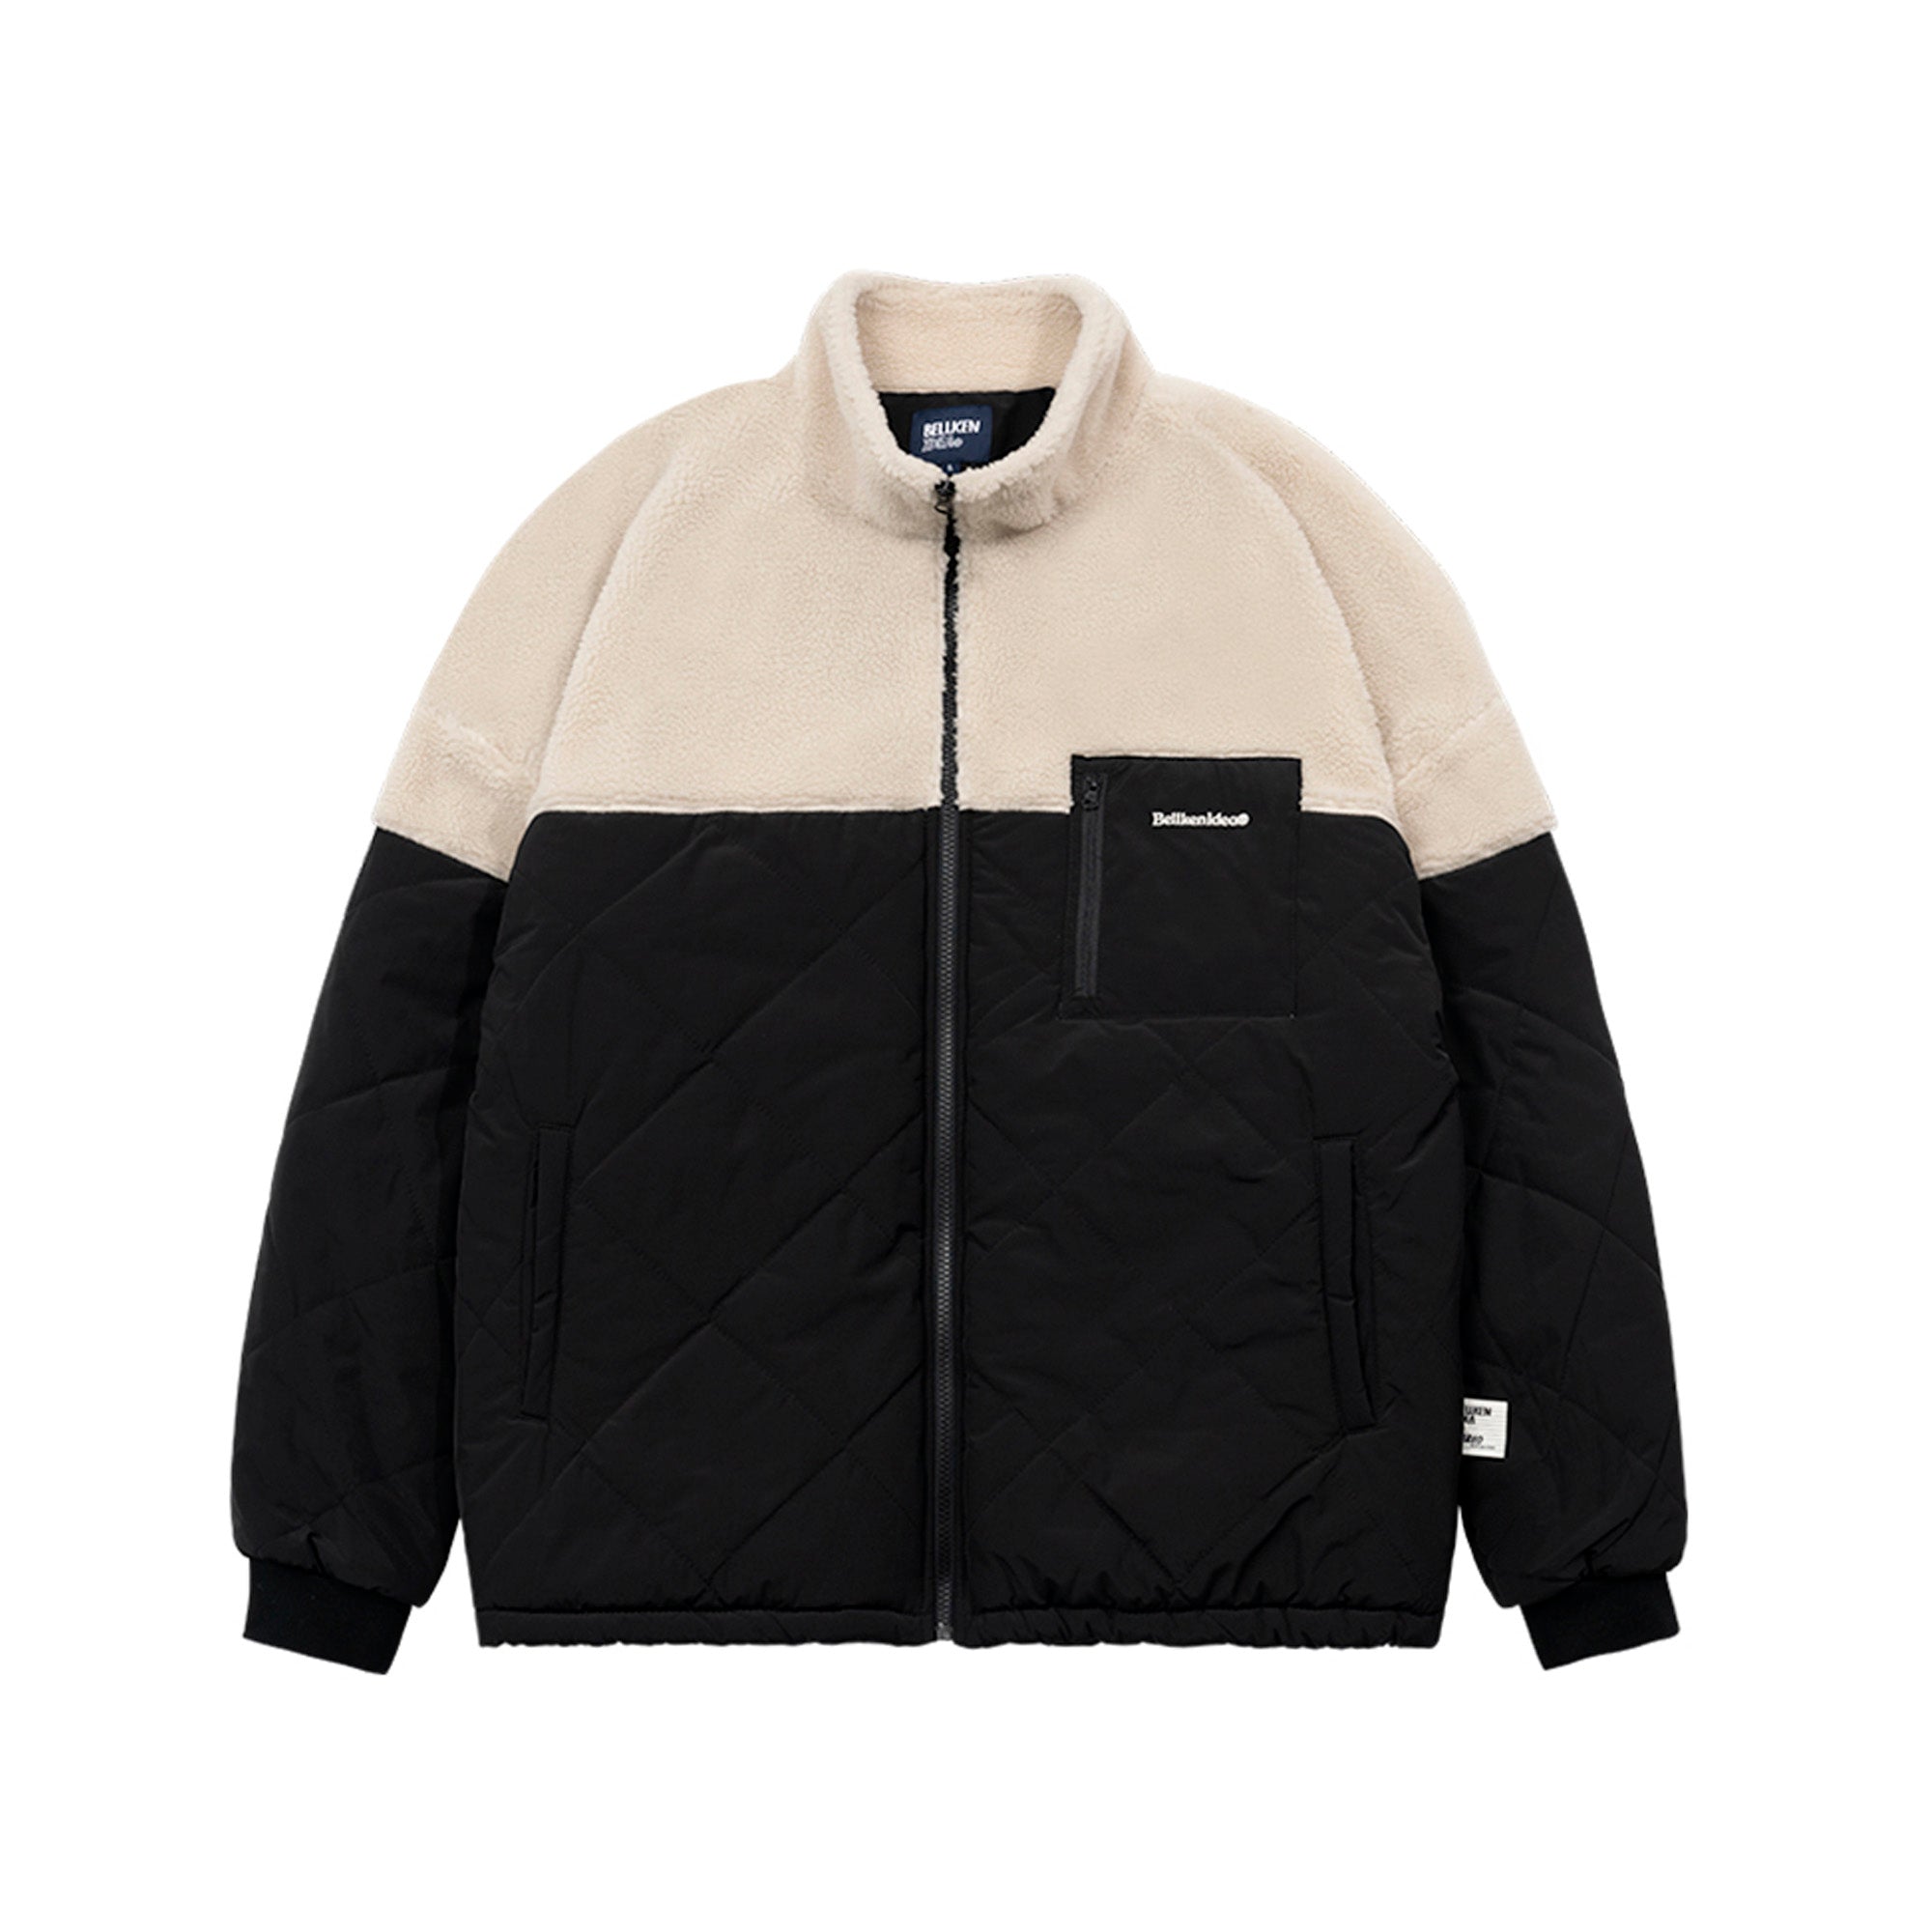 Urban fleece switching jacket